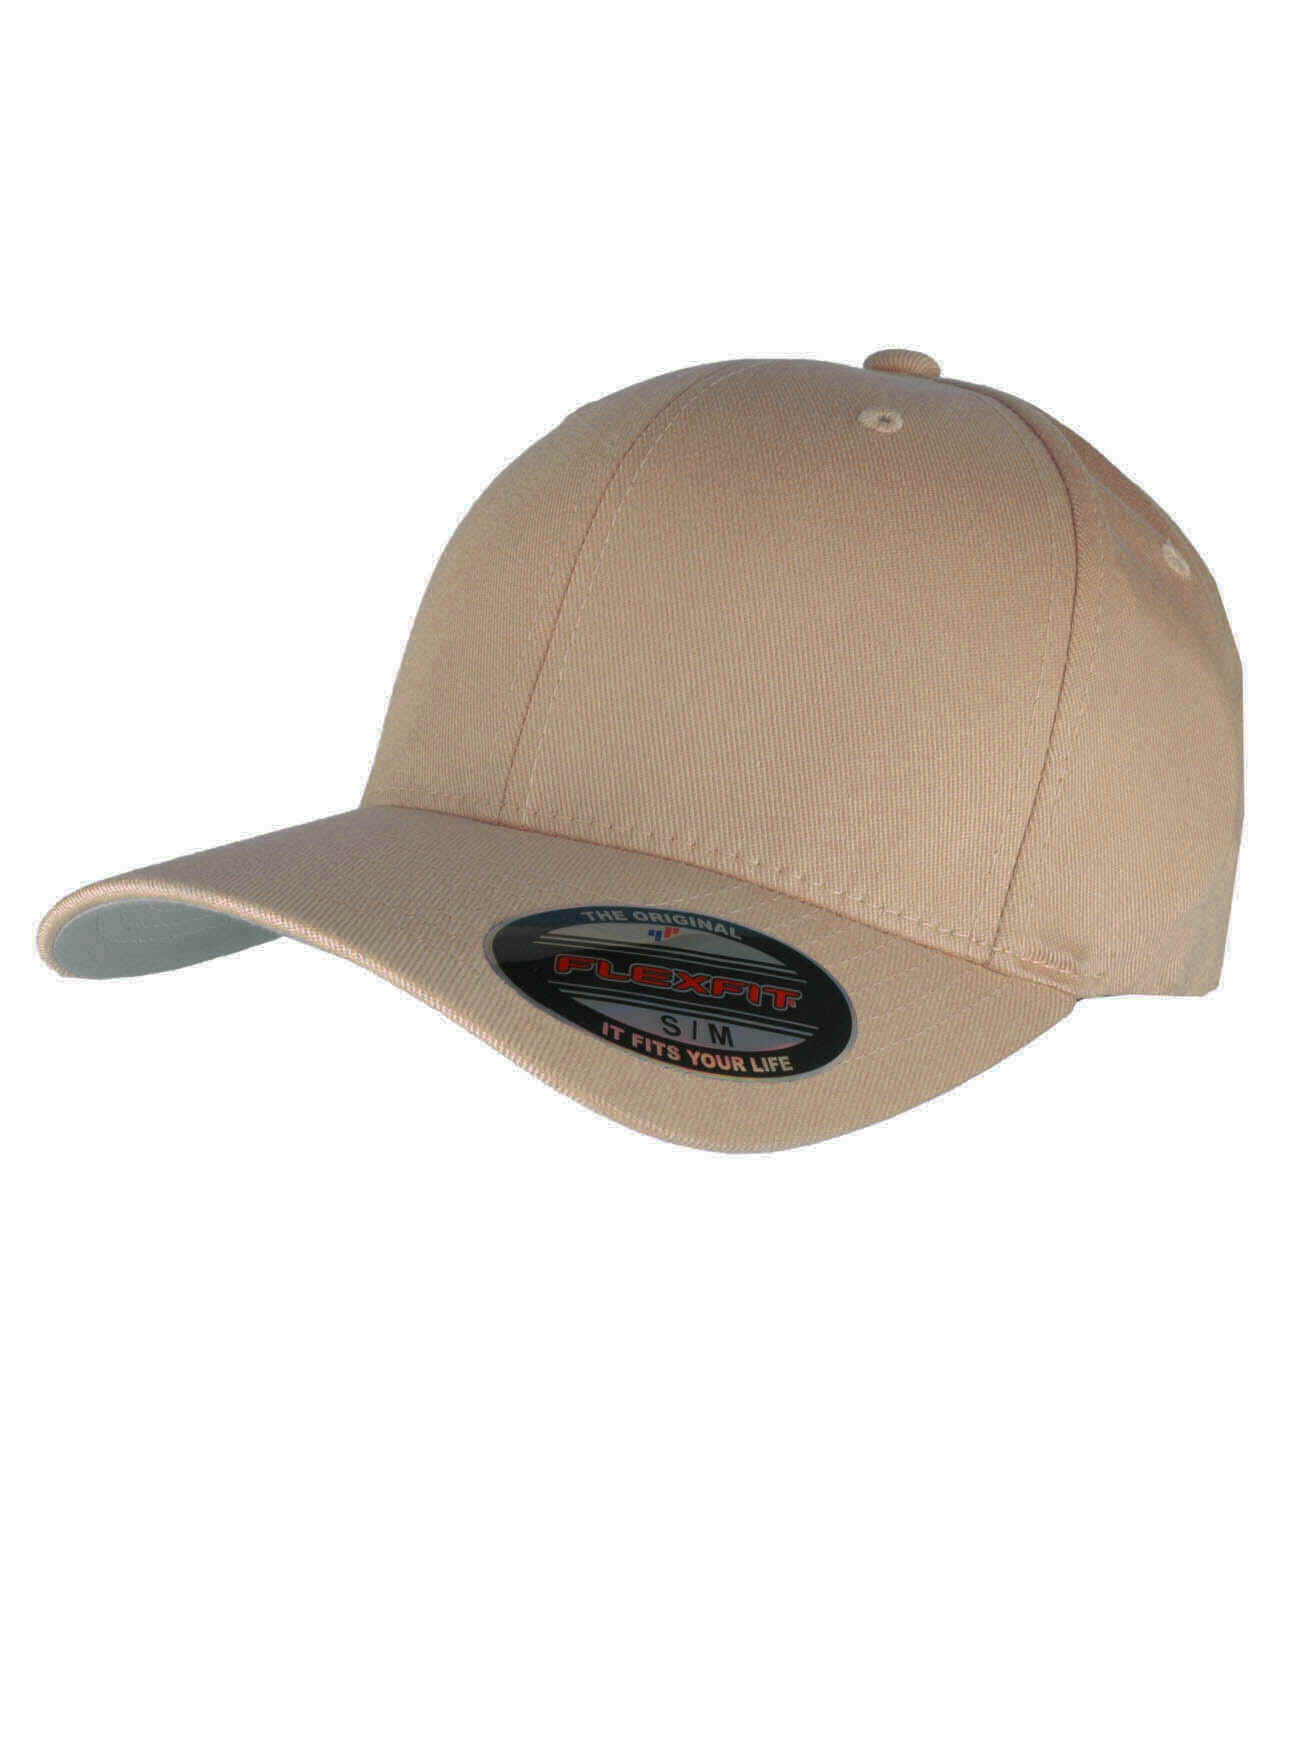 Flex fit cap, super god kvalitets cap.